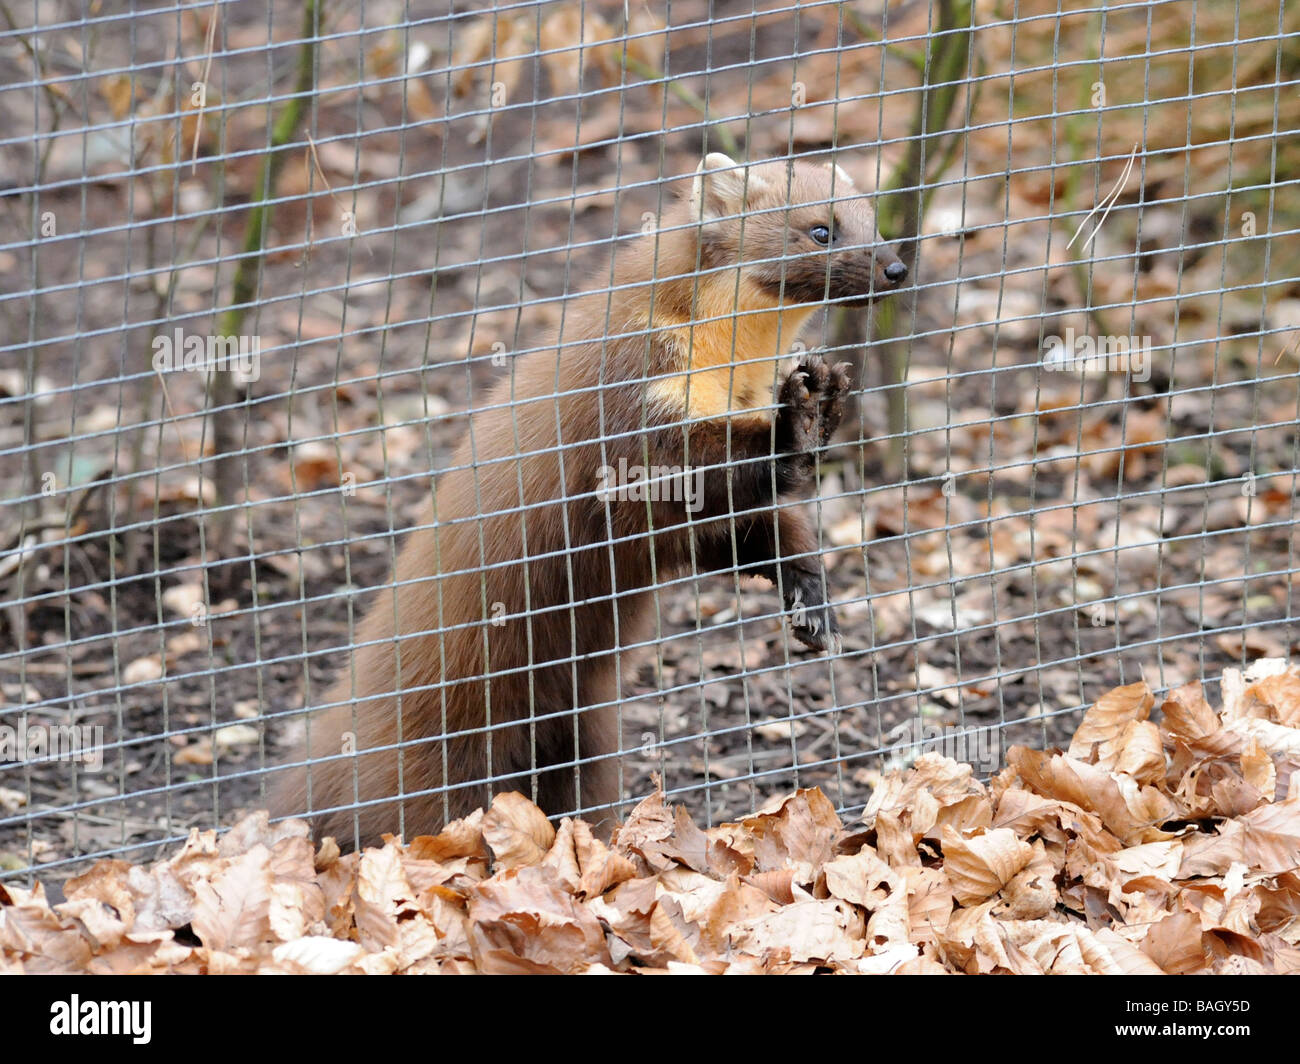 Marten pino cautivo en una jaula, mirando a través de las rejas. Foto de stock